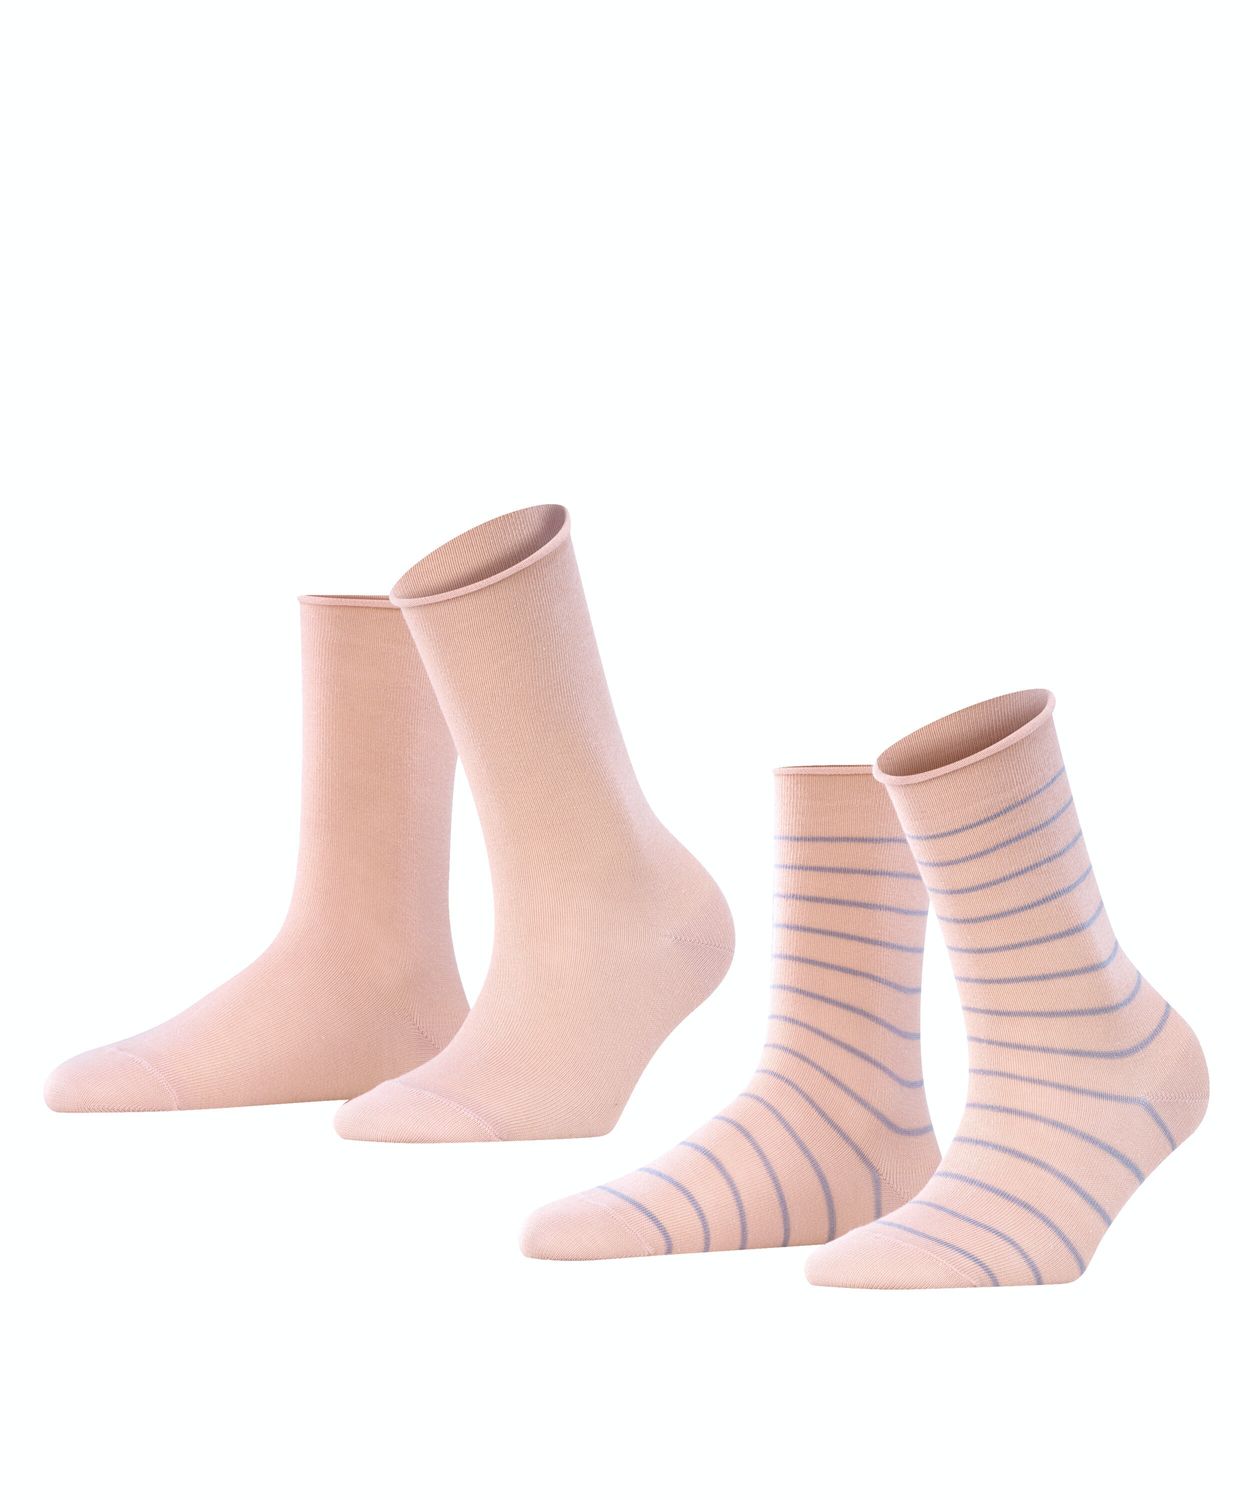 Falke Damen Socken HAPPY STRIPE 2er Pack Hersteller: Falke Bestellnummer:4043874821995